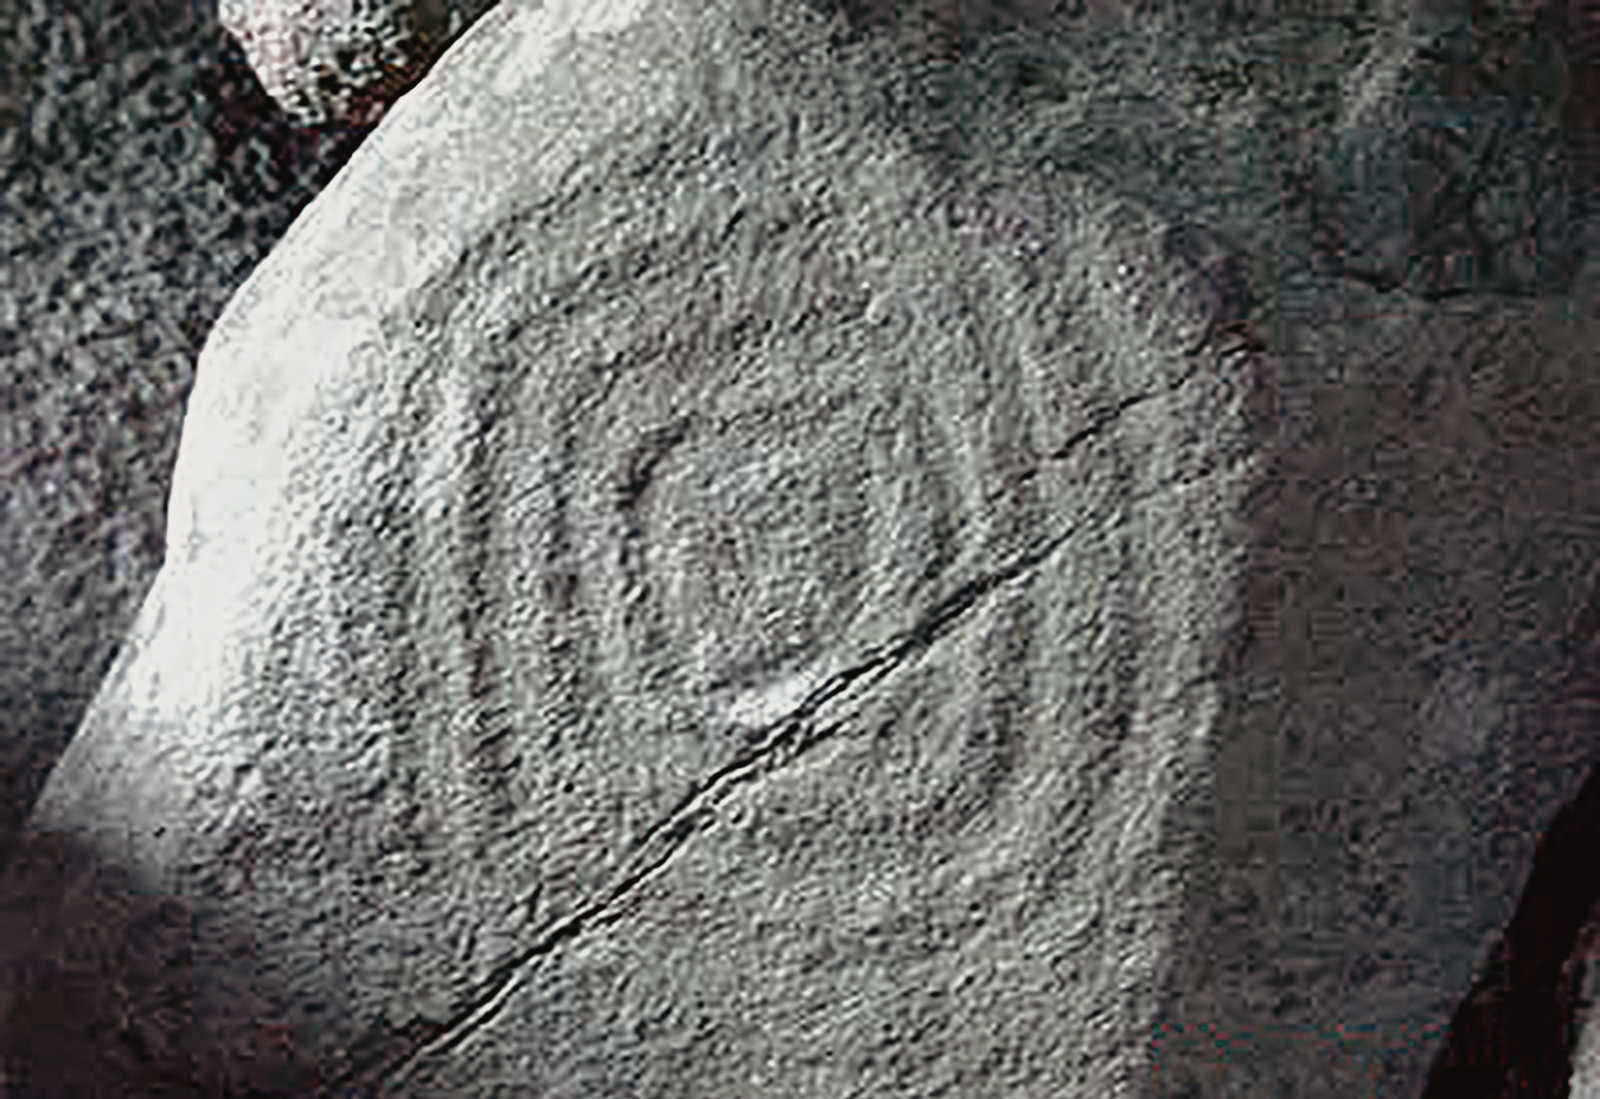 Rock Art Petroglyphs Little Sister Island Santa Catarina Brazil Archaeology